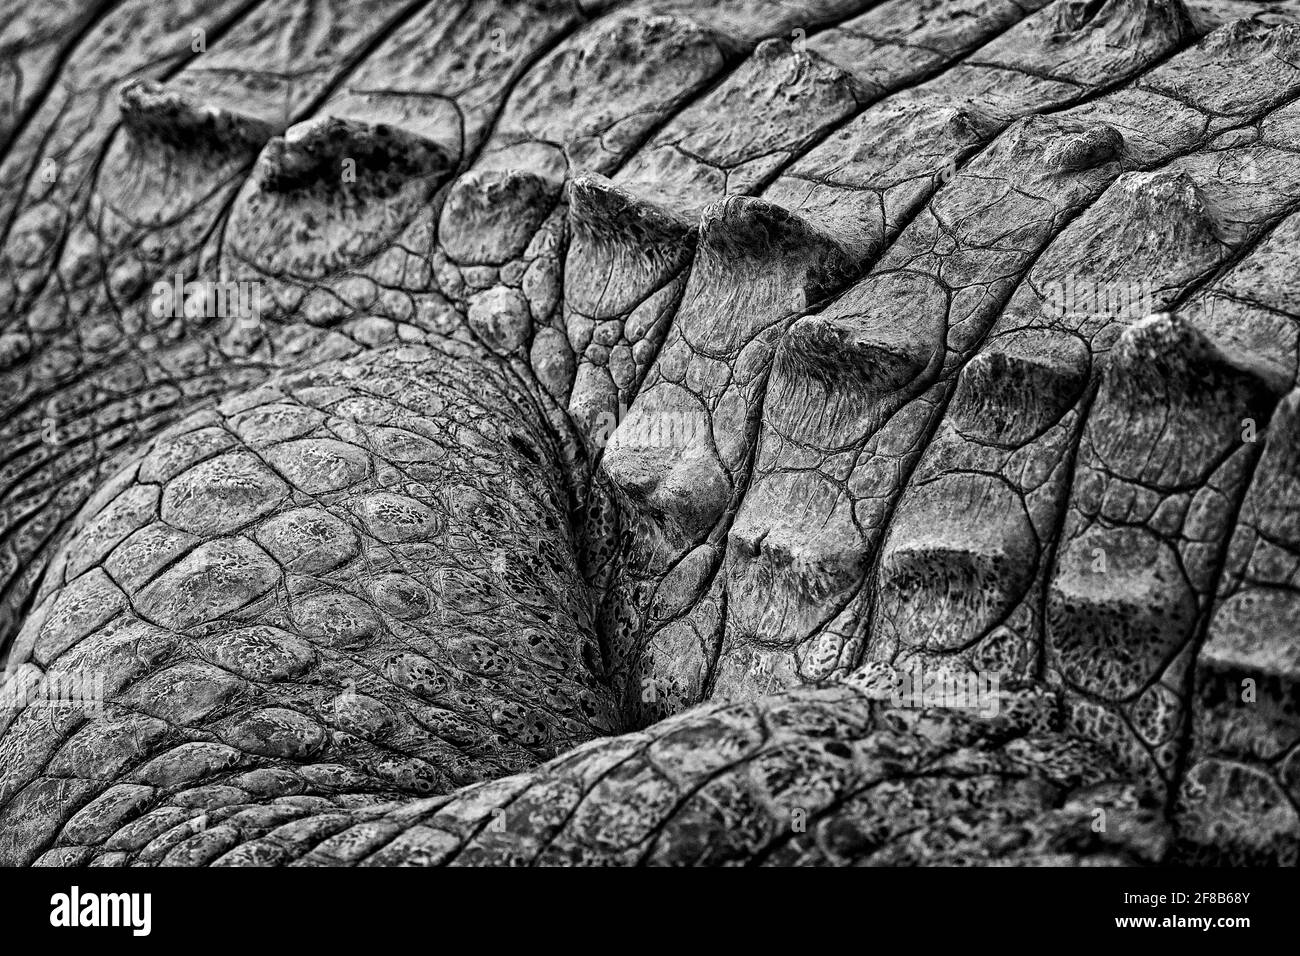 Amerikanische Krokodile, Crocodylus acutus, Tiere im Fluss. Wildlife-Szene aus der Natur. Reptil aus dem Fluss Tarcoles, Costa Rica. Gefährliche Tiere i Stockfoto